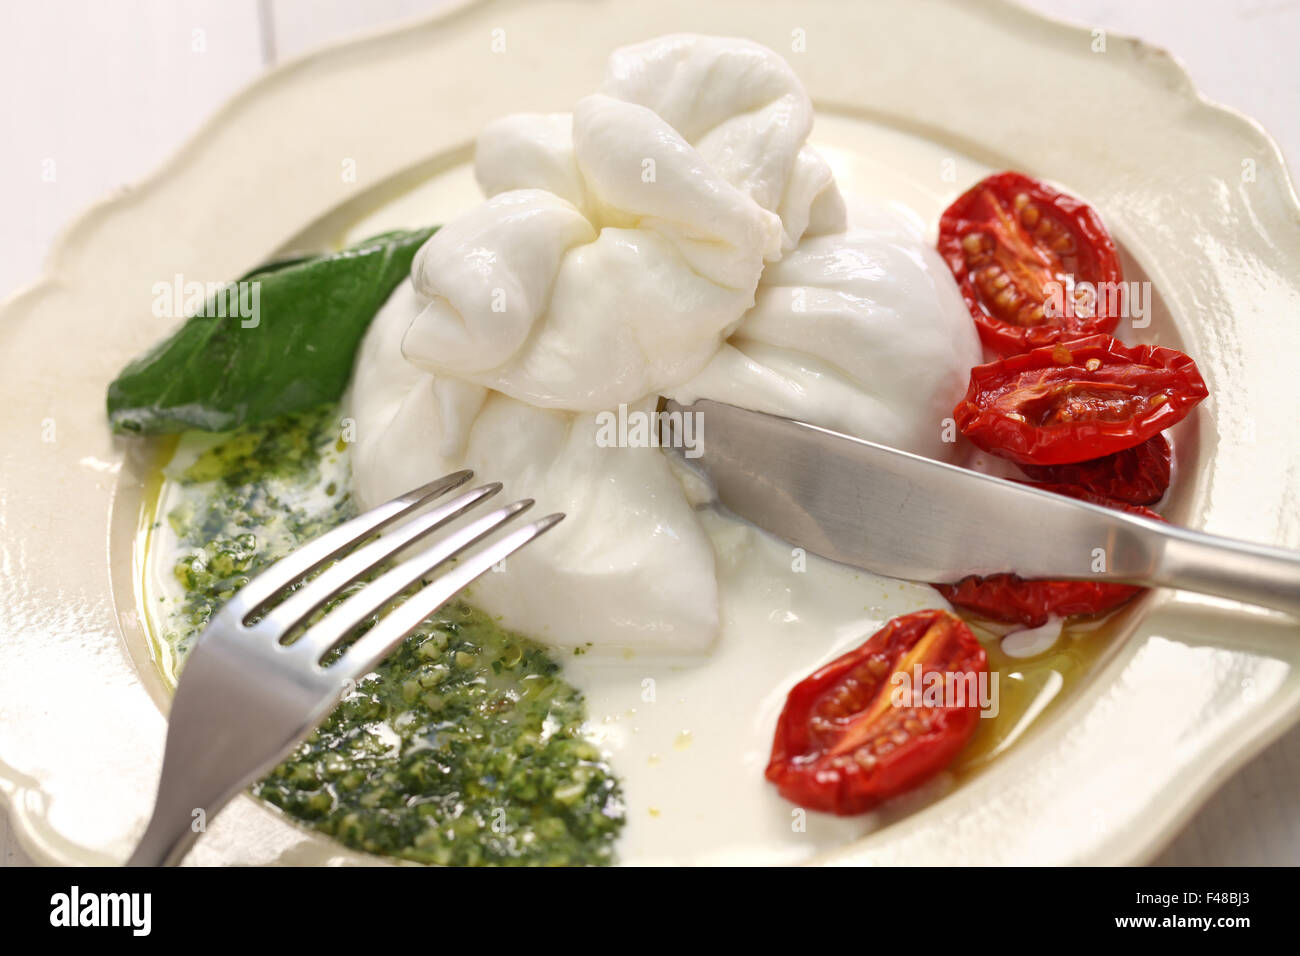 Burrata, freschi formaggi italiani realizzati dalla mozzarella e crema. Foto Stock